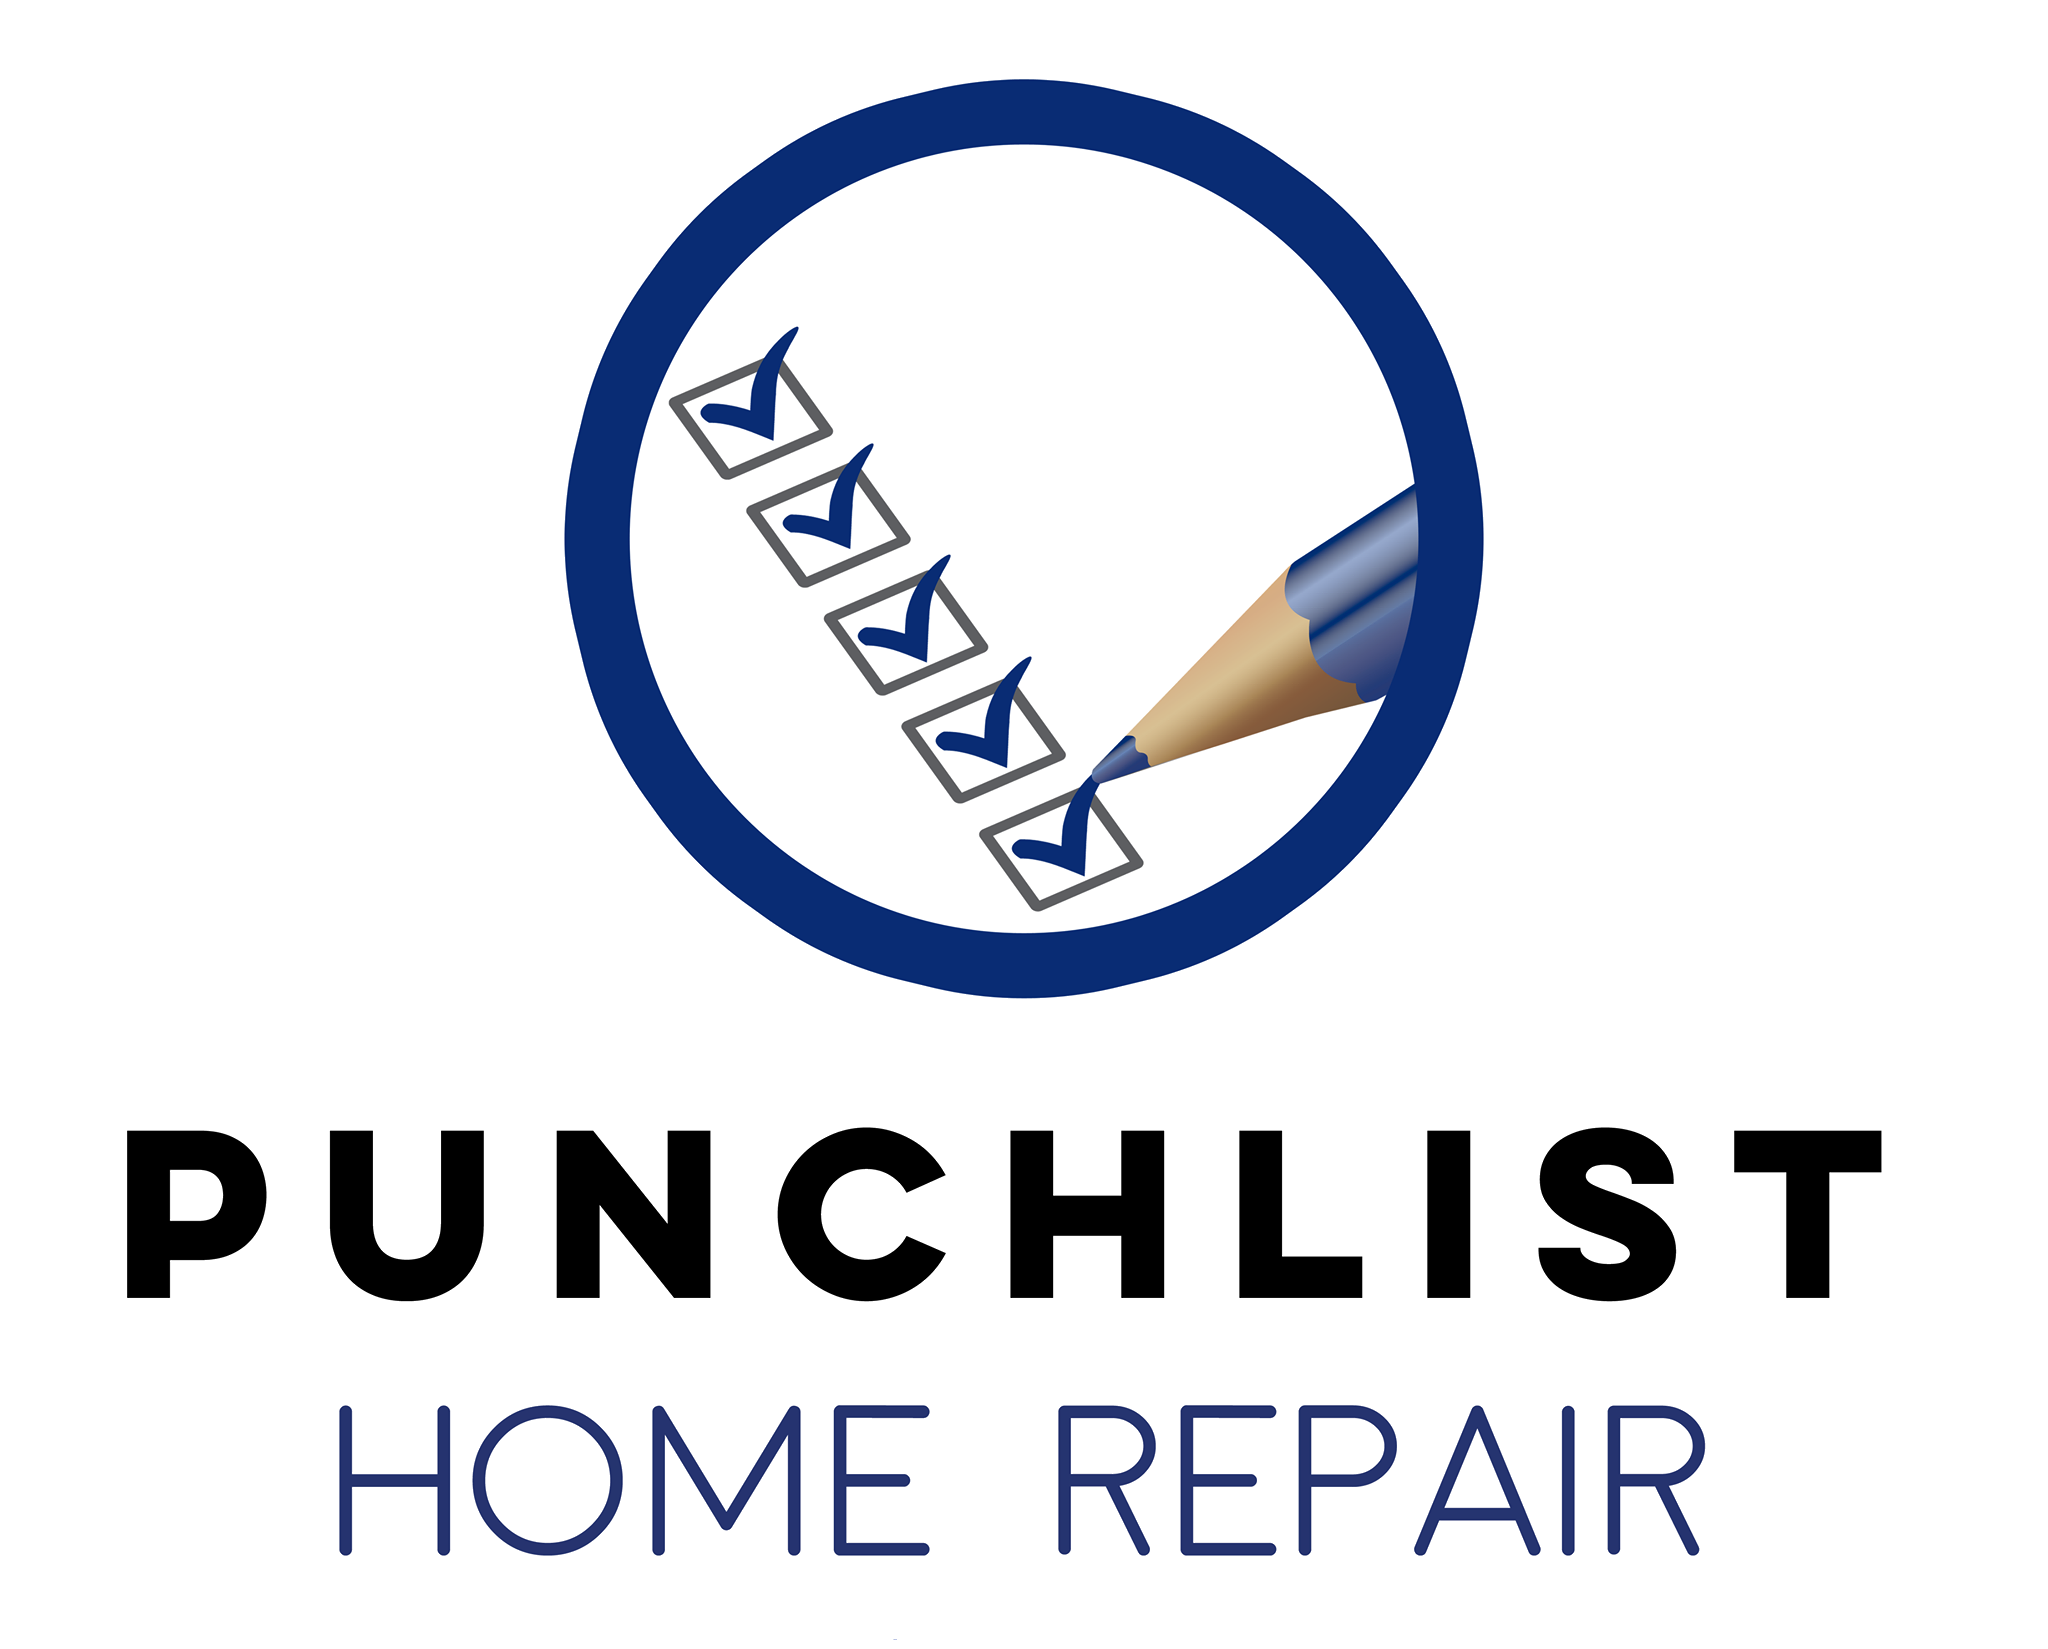 Home Repair Handyman